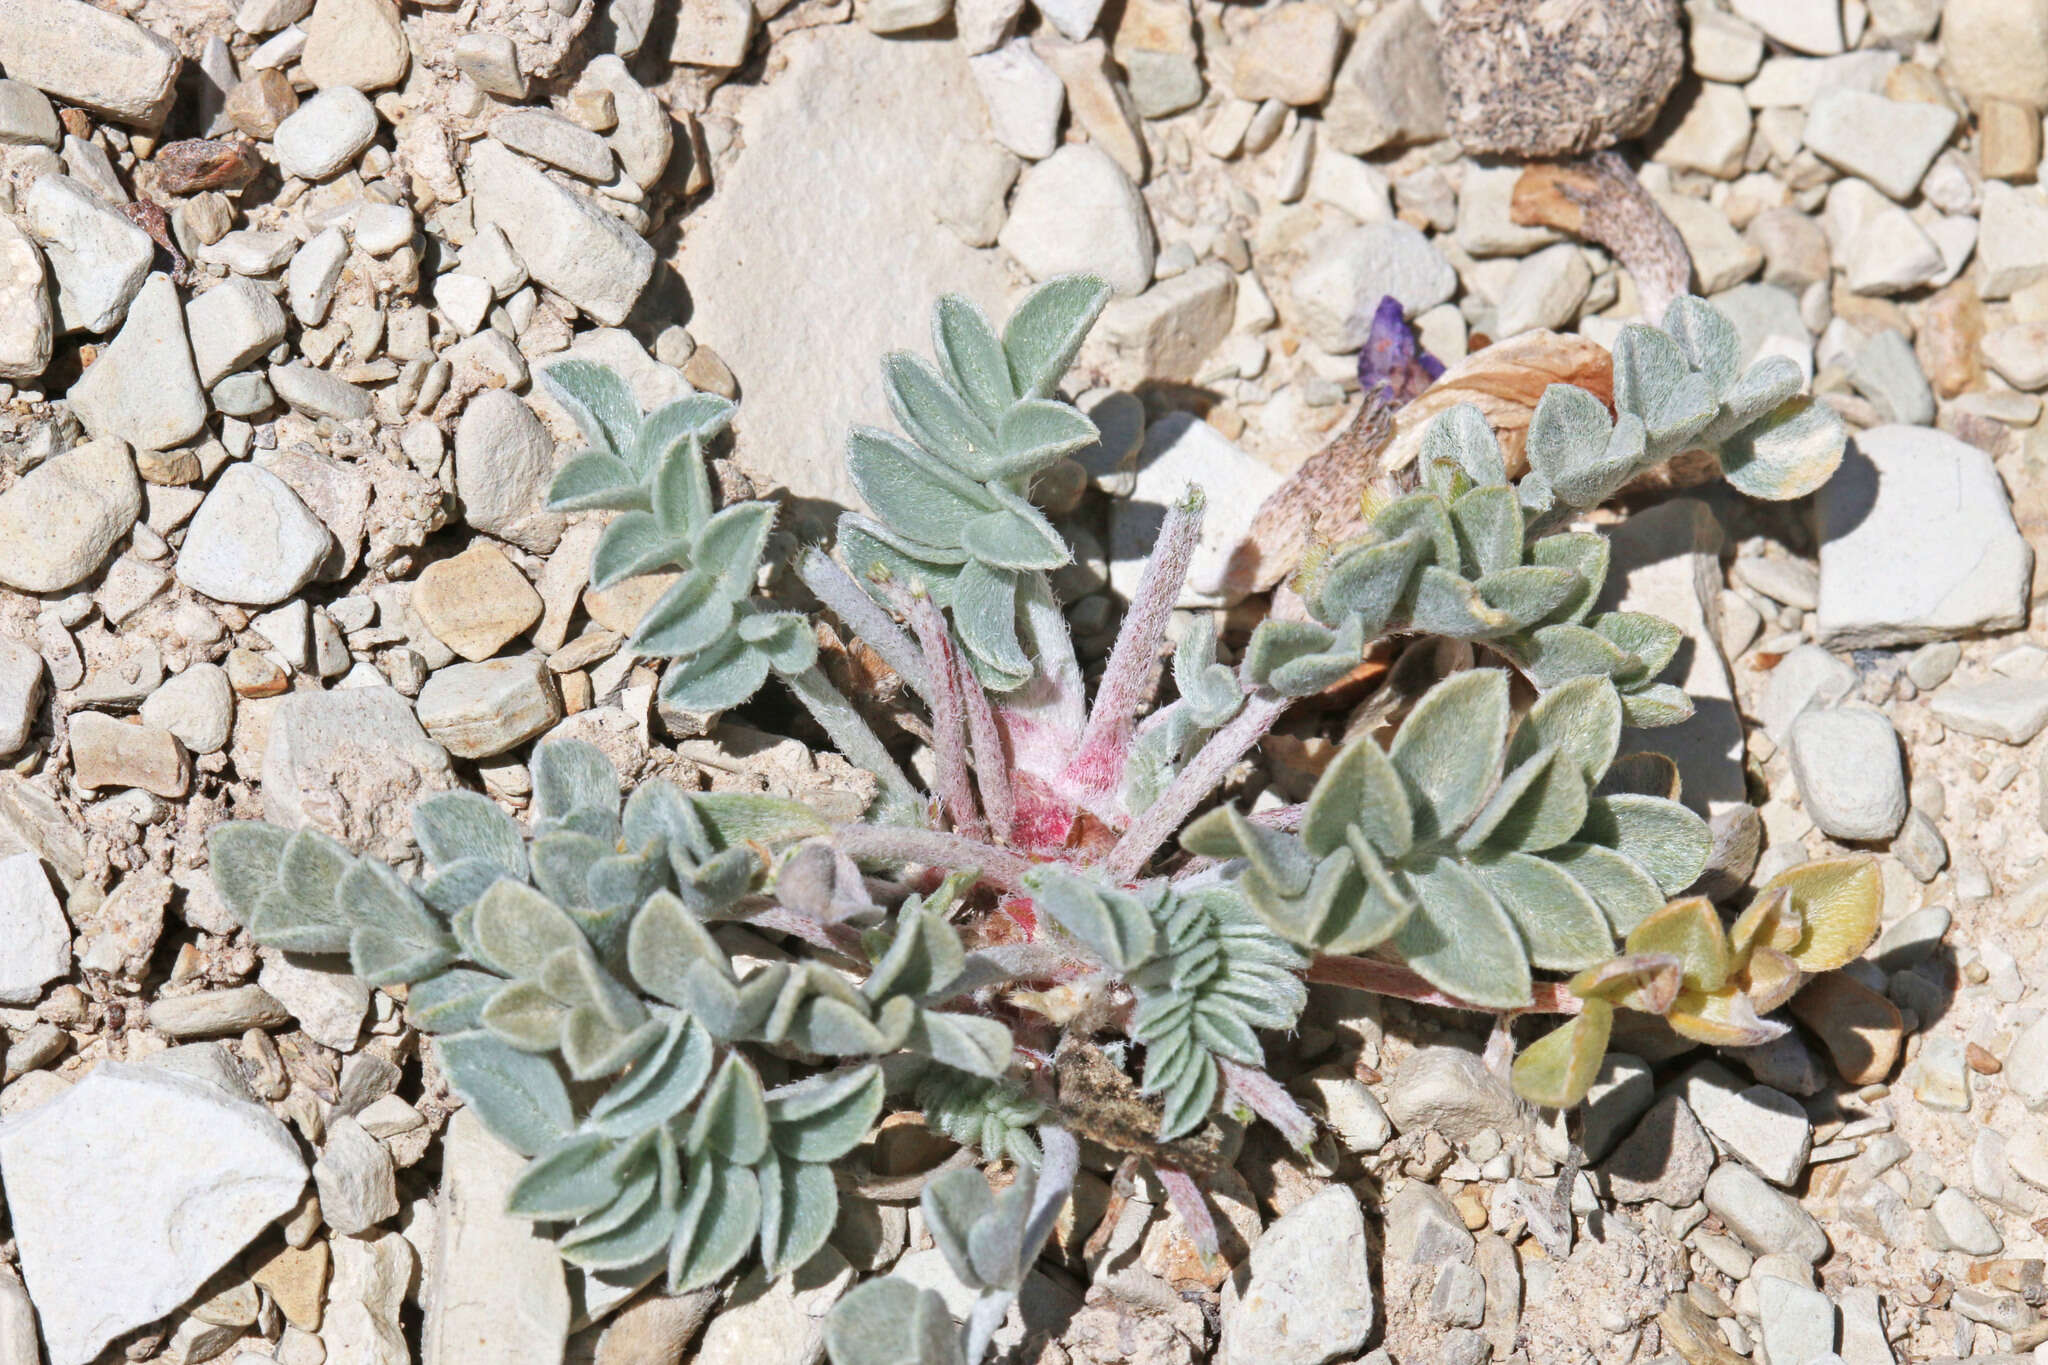 Image of Astragalus chamaeleuce var. chamaeleuce